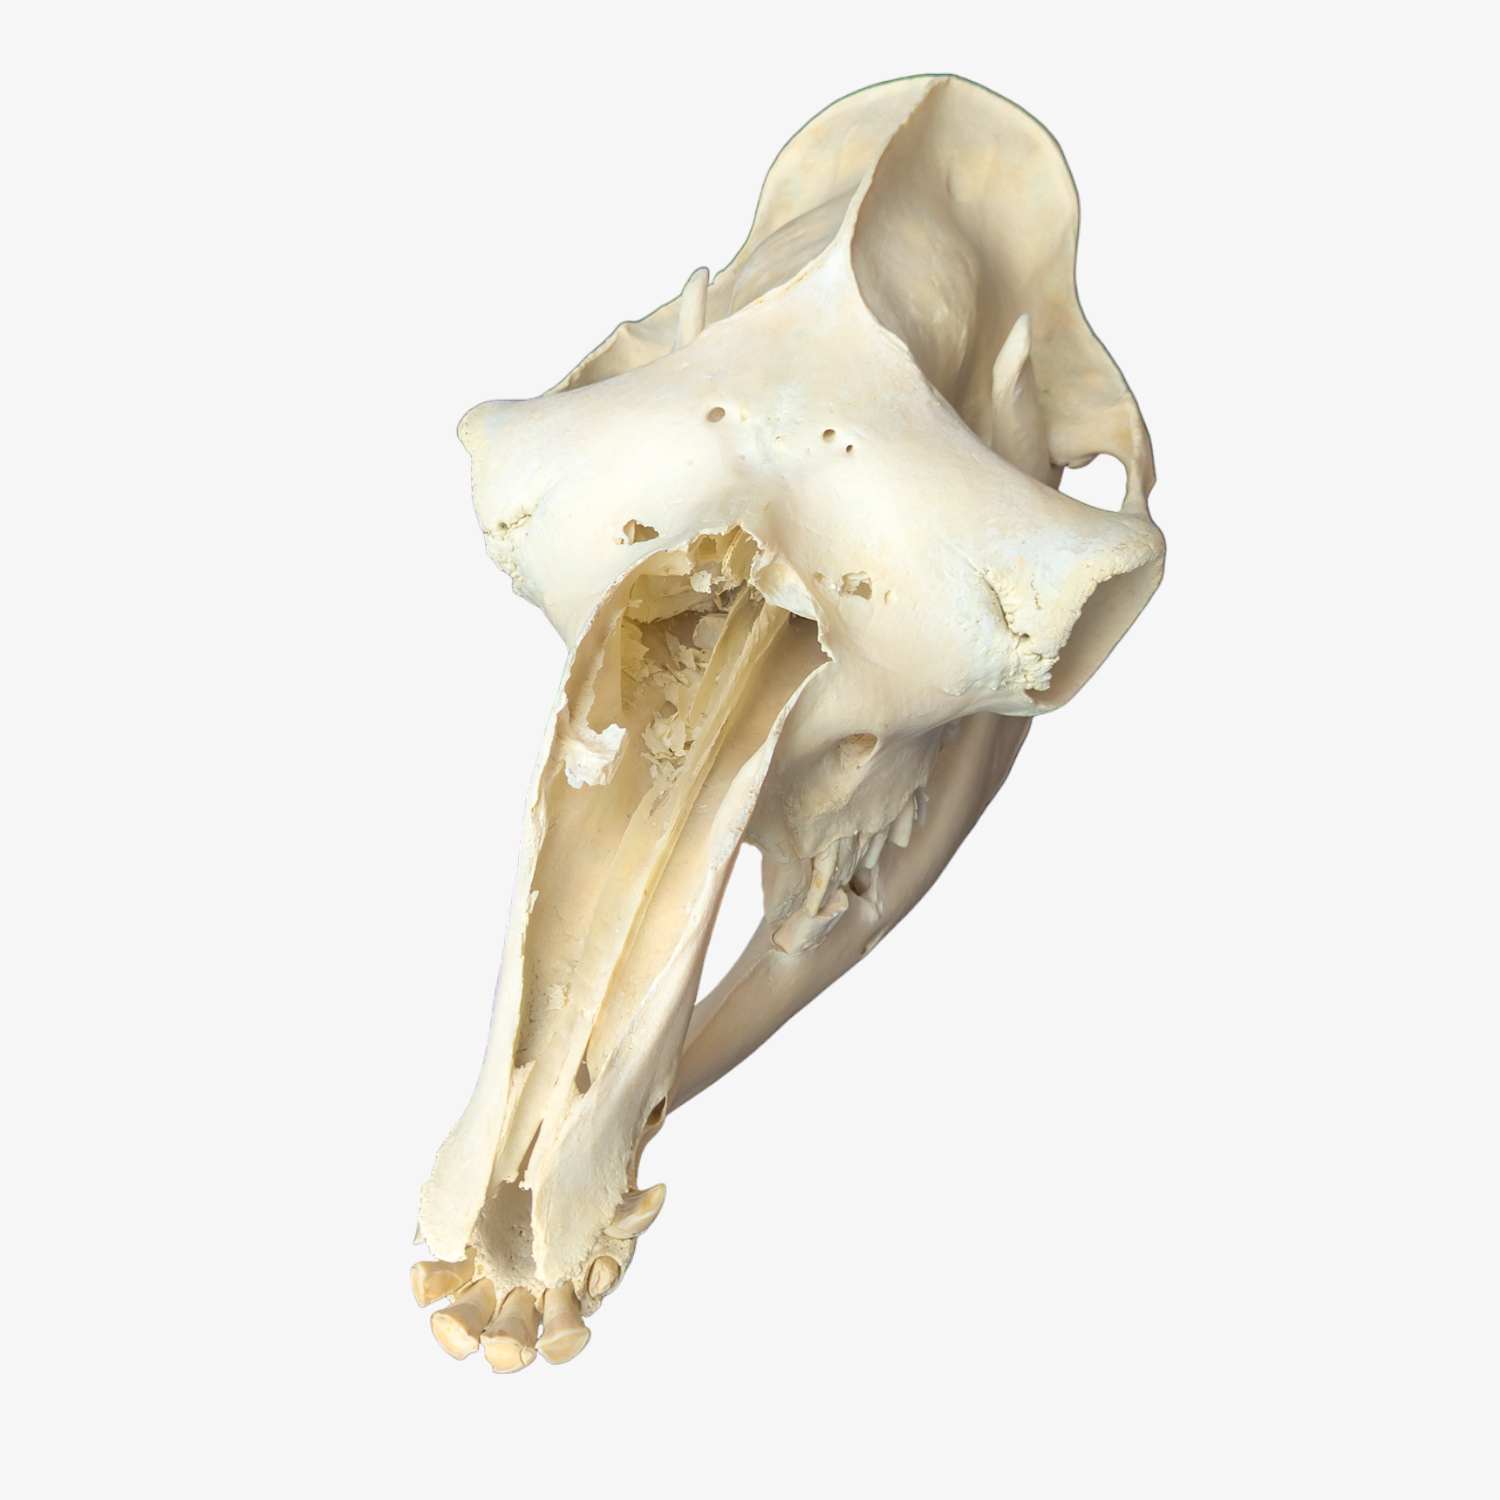 Dromedary Camel Skull (Damaged Nasal Bones)